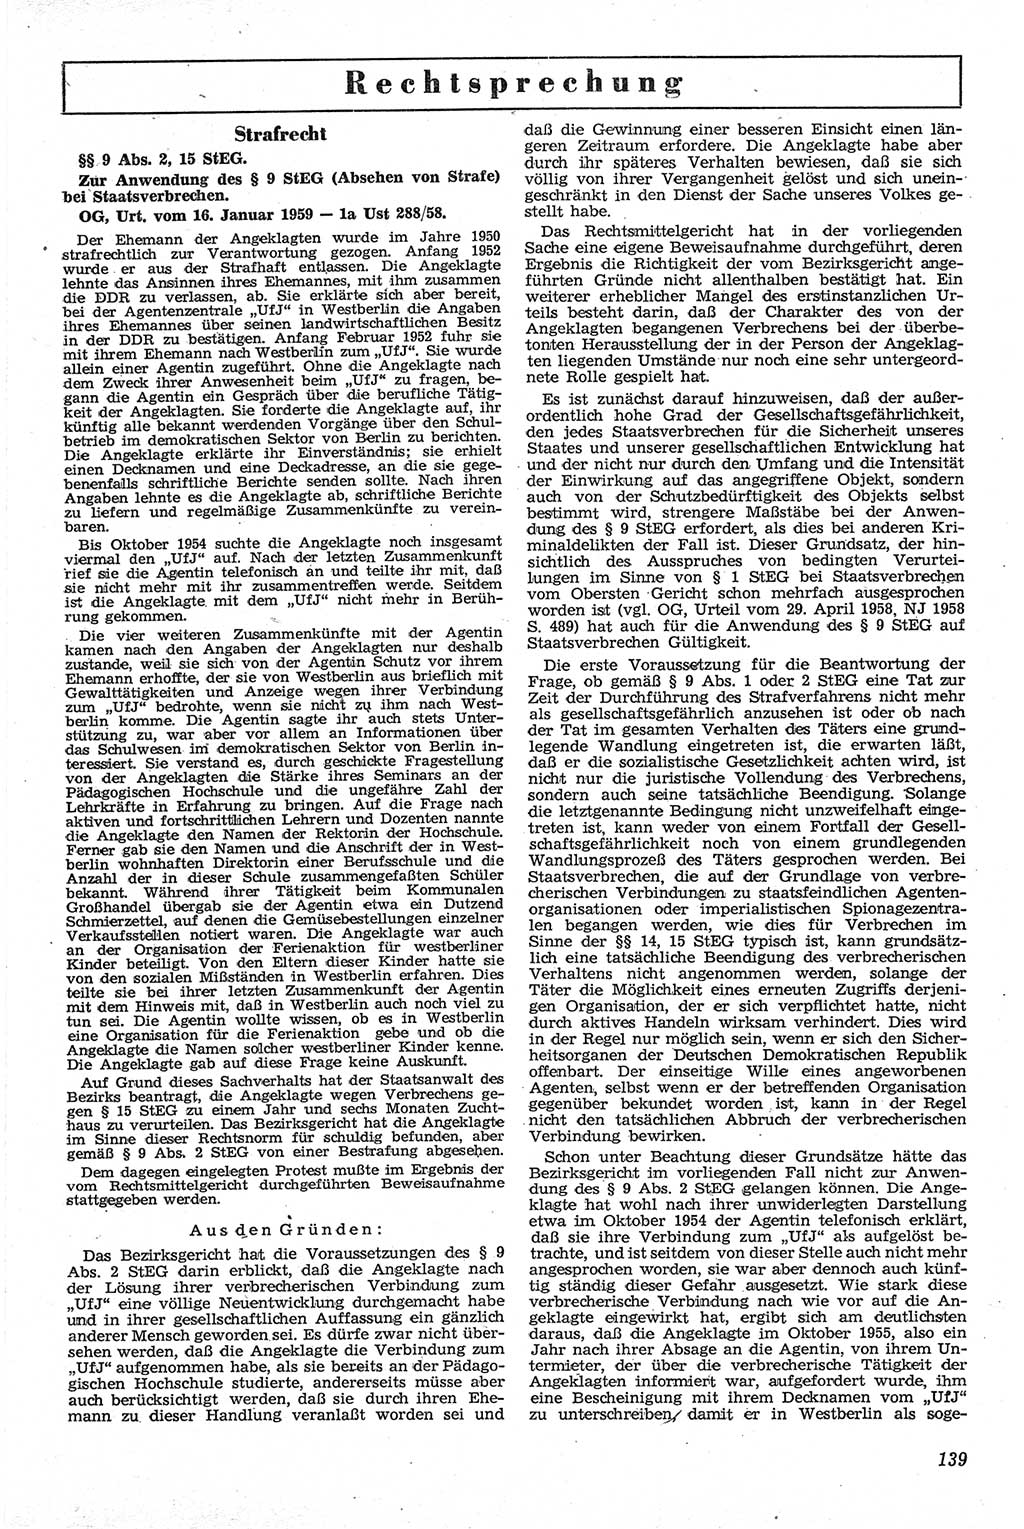 Neue Justiz (NJ), Zeitschrift für Recht und Rechtswissenschaft [Deutsche Demokratische Republik (DDR)], 13. Jahrgang 1959, Seite 139 (NJ DDR 1959, S. 139)